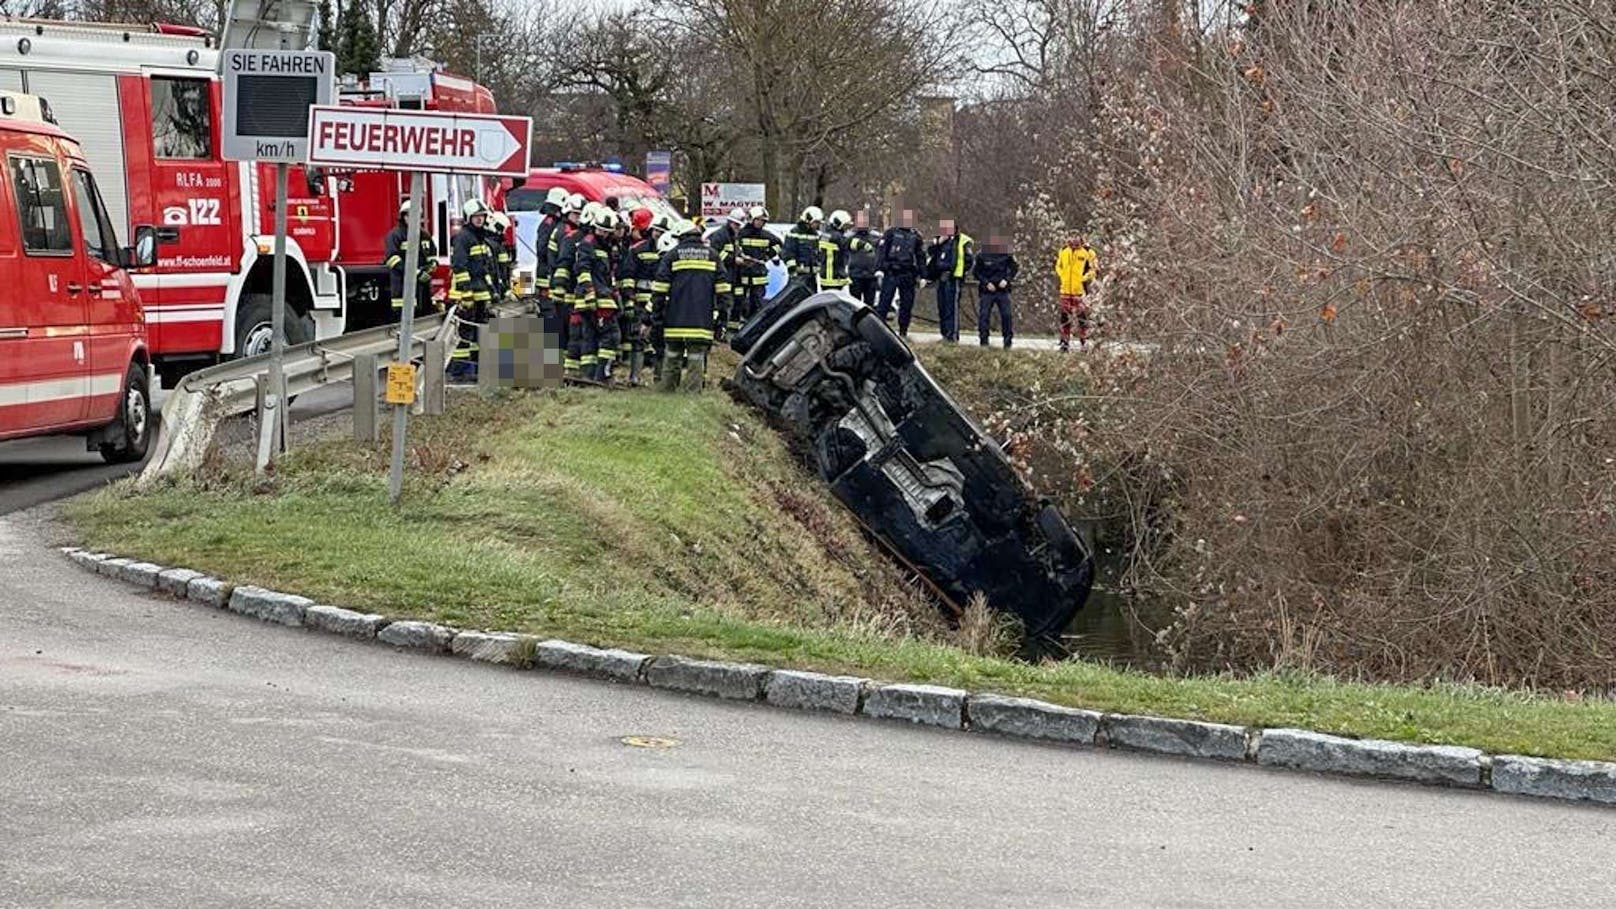 Ein tragischer Verkehrsunfall ereignete sich am 24. Dezember gegen 08:20 Uhr in Untersiebenbrunn. Eine 36-jährige Lenkerin verunfallte aus noch unklarer Ursache mit ihrem BMW auf der Siebenbrunnerstraße nahe dem Feuerwehrhaus. Sie starb noch an der Unfallstelle.